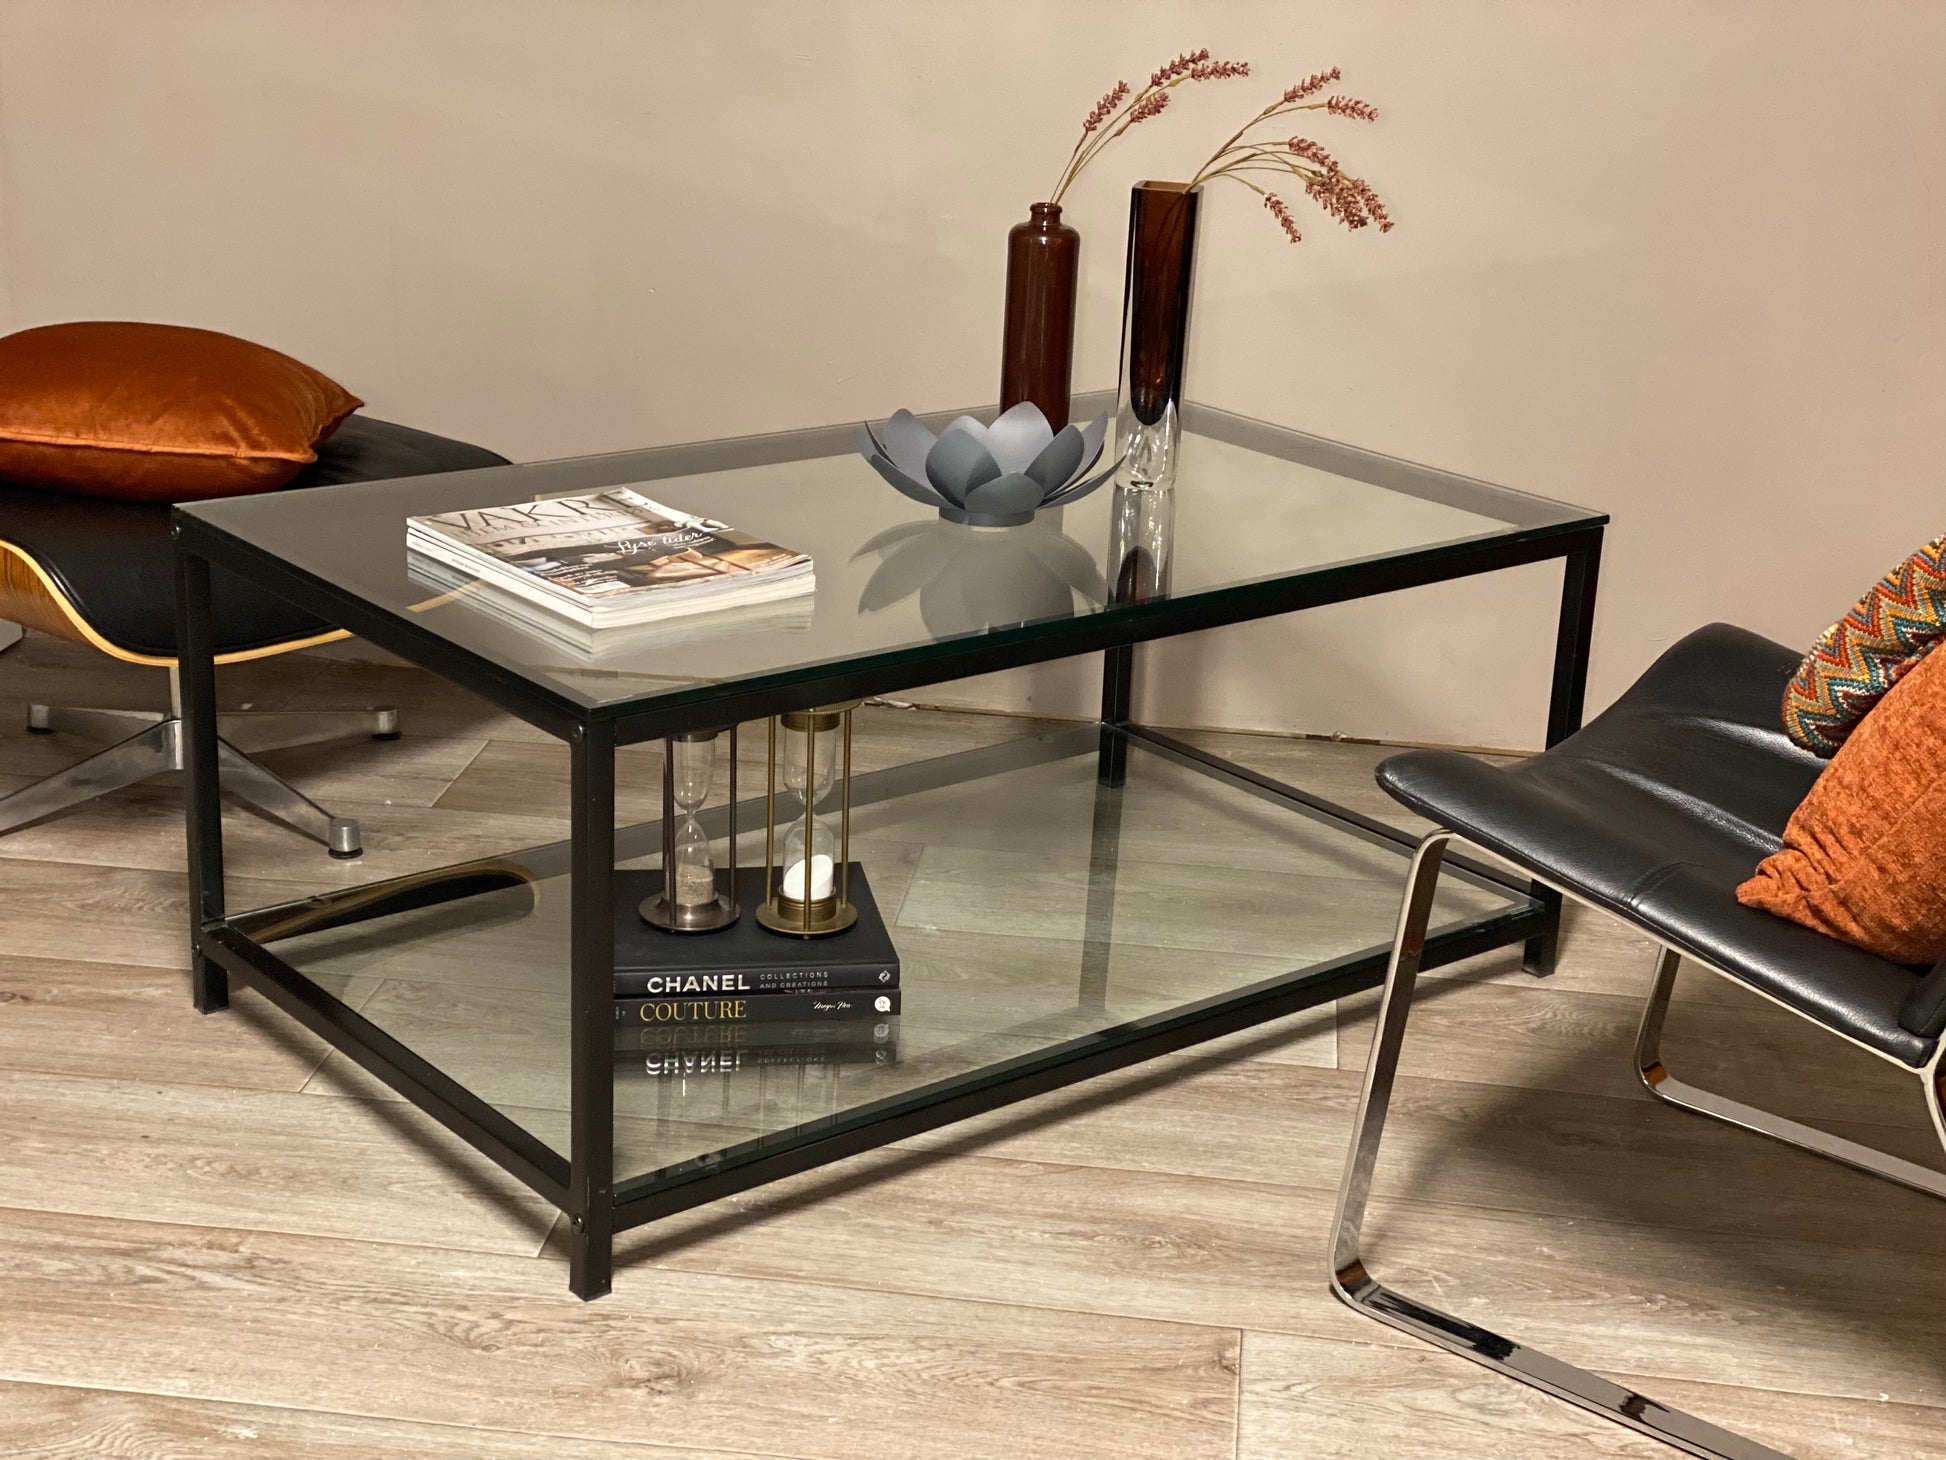 Stort & massivt glassbord - Kvalitetsbrukt Møbel fra Hjembruket på Hjembruket